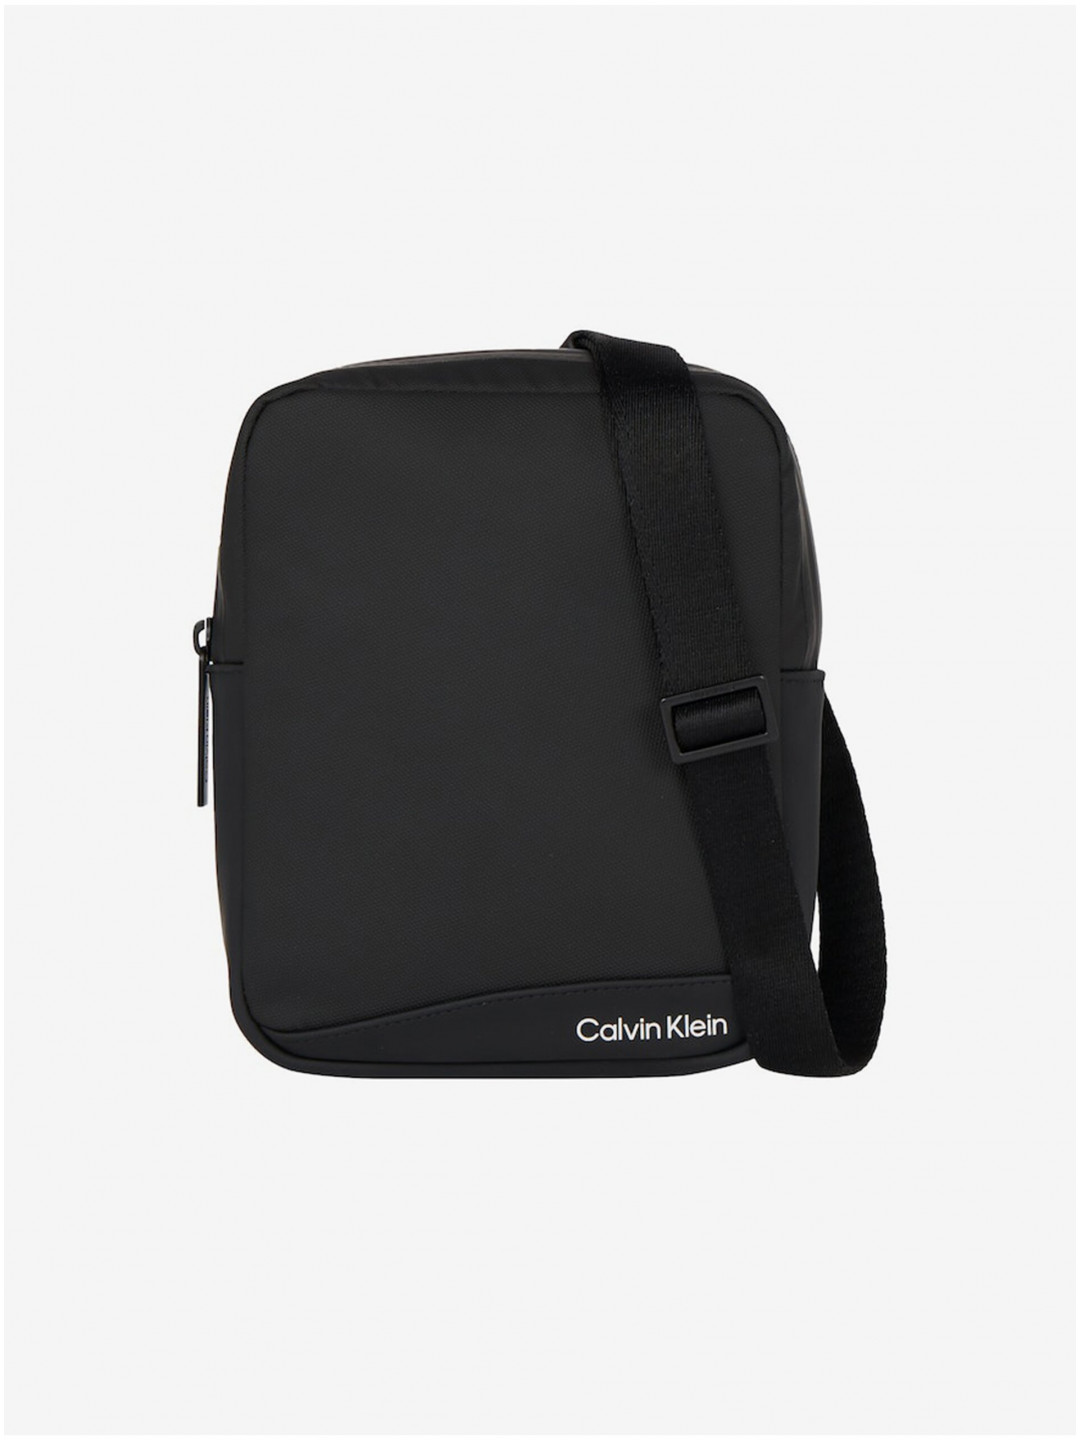 Černá pánská taška přes rameno Calvin Klein Rubberized Conv Reporter S